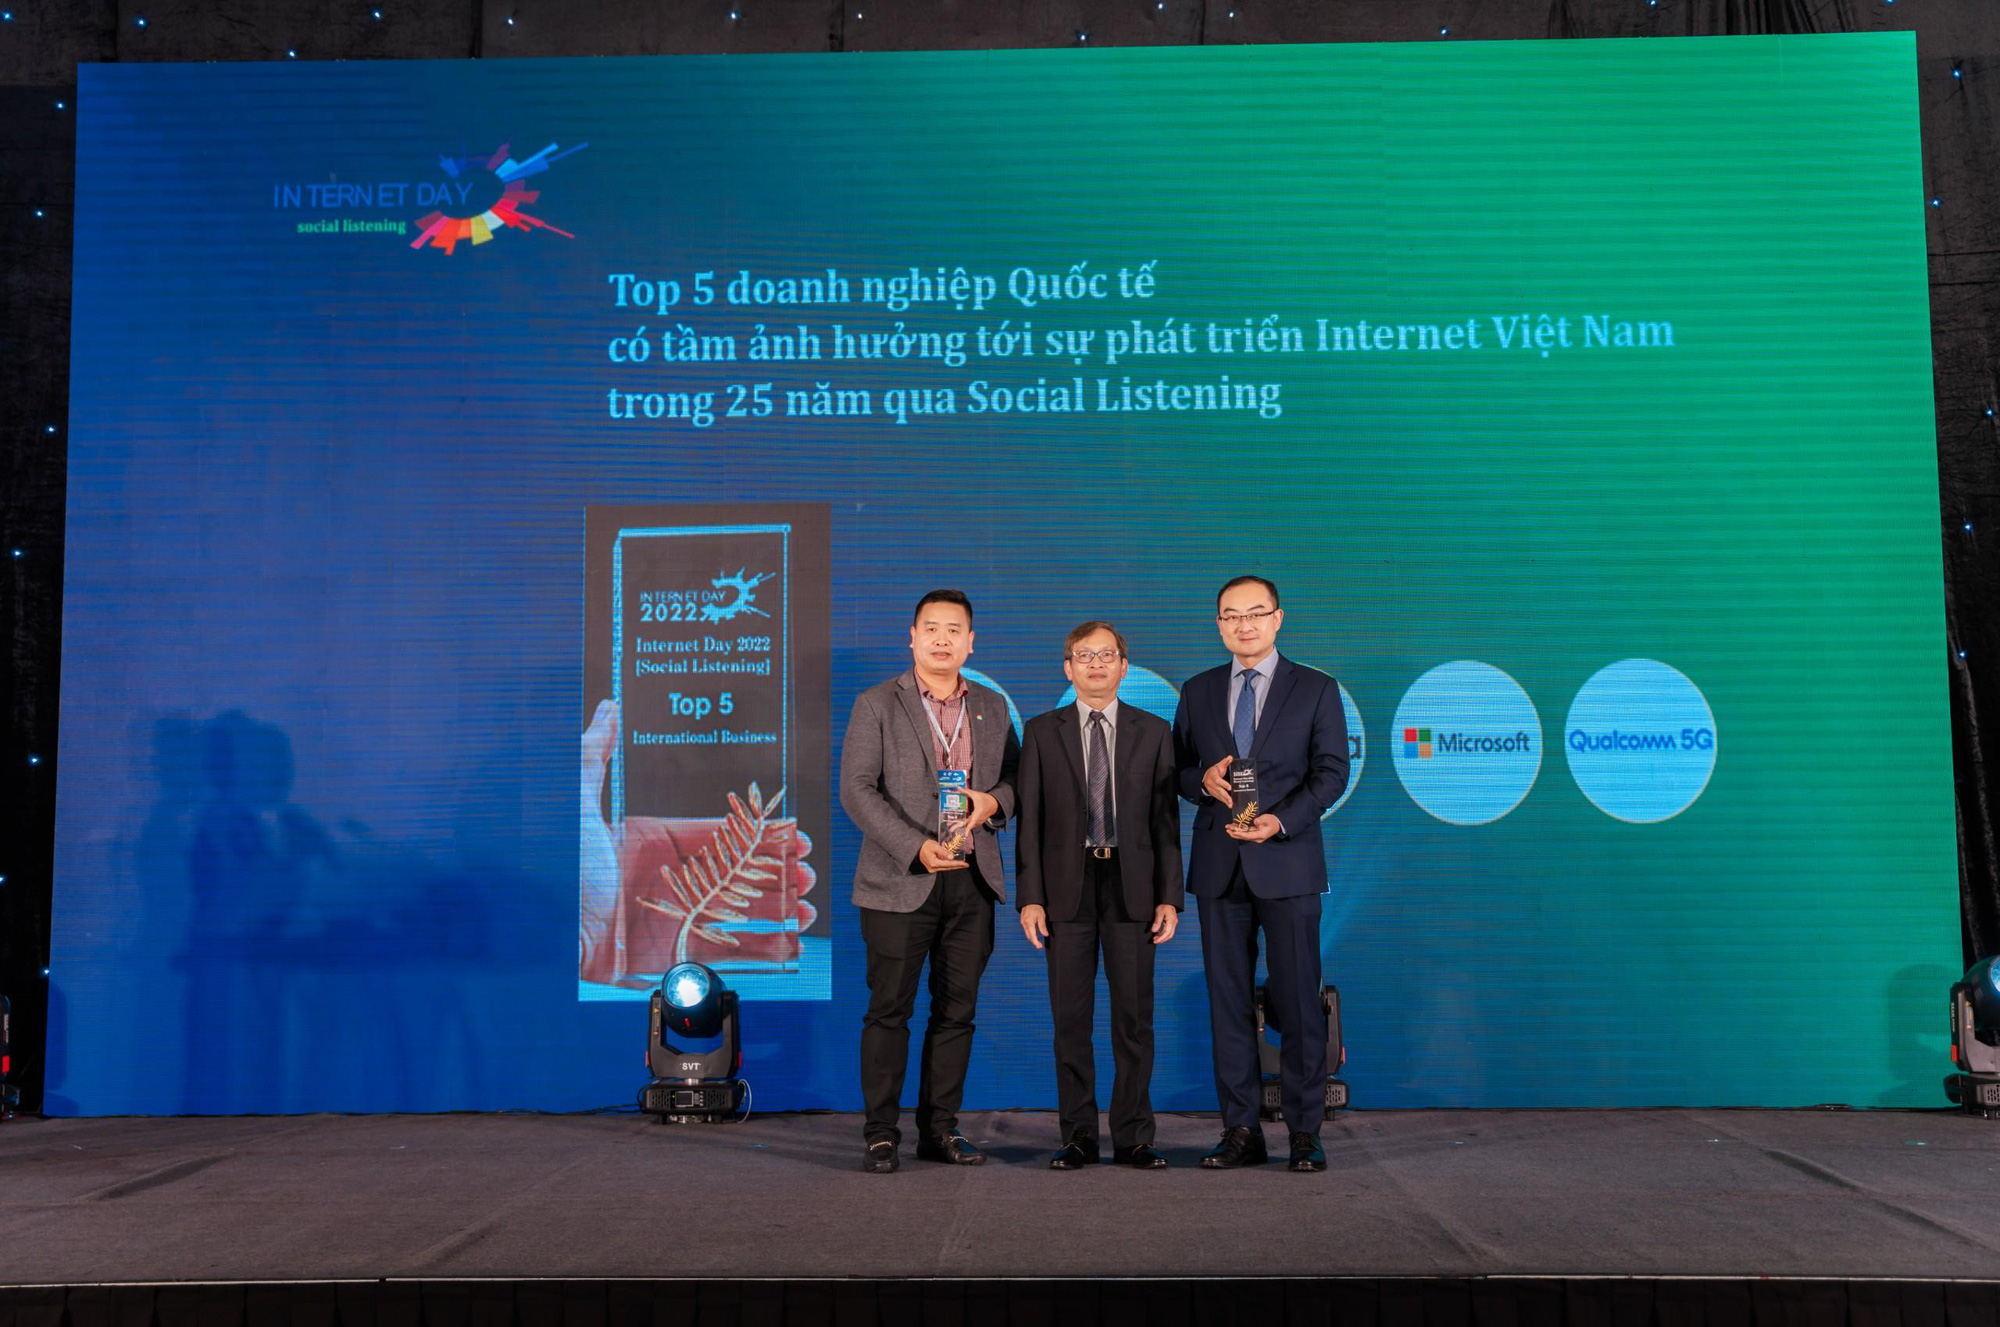 Doanh nghiệp quốc tế có tầm ảnh hưởng tới sự phát triển Internet Việt Nam